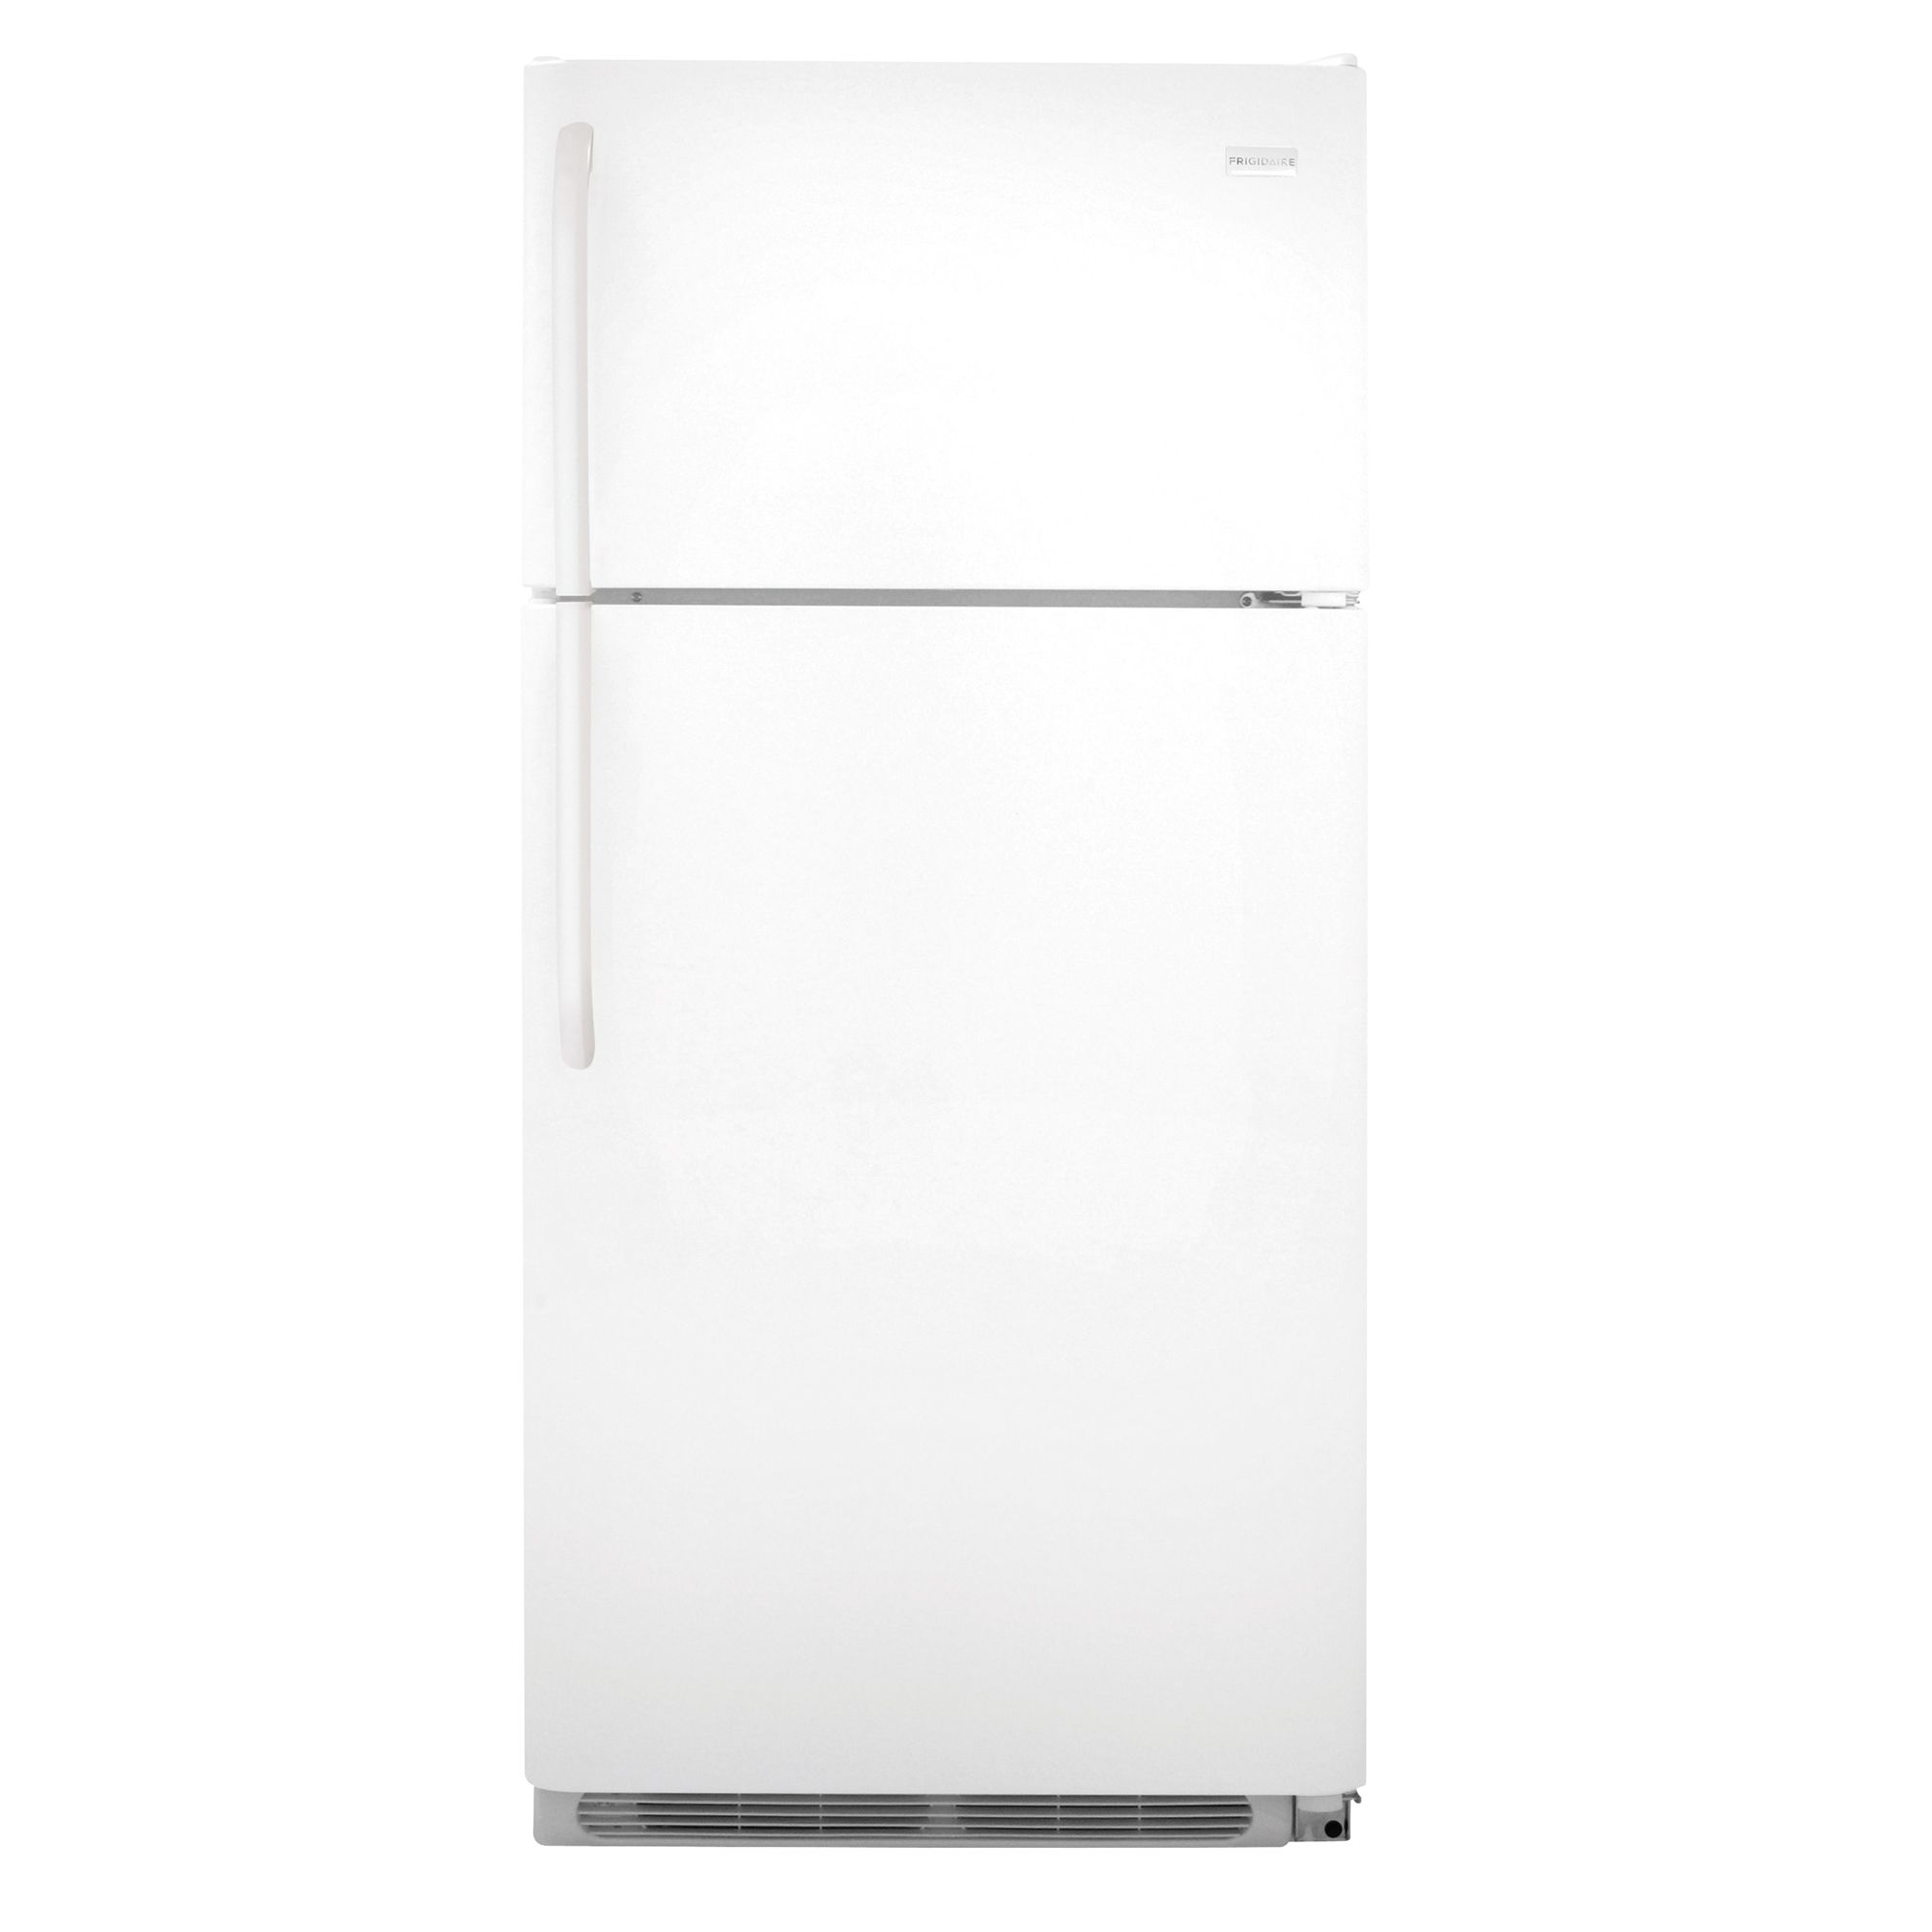 Frigidaire 18.2 cu. ft. Top-Freezer Refrigerator White